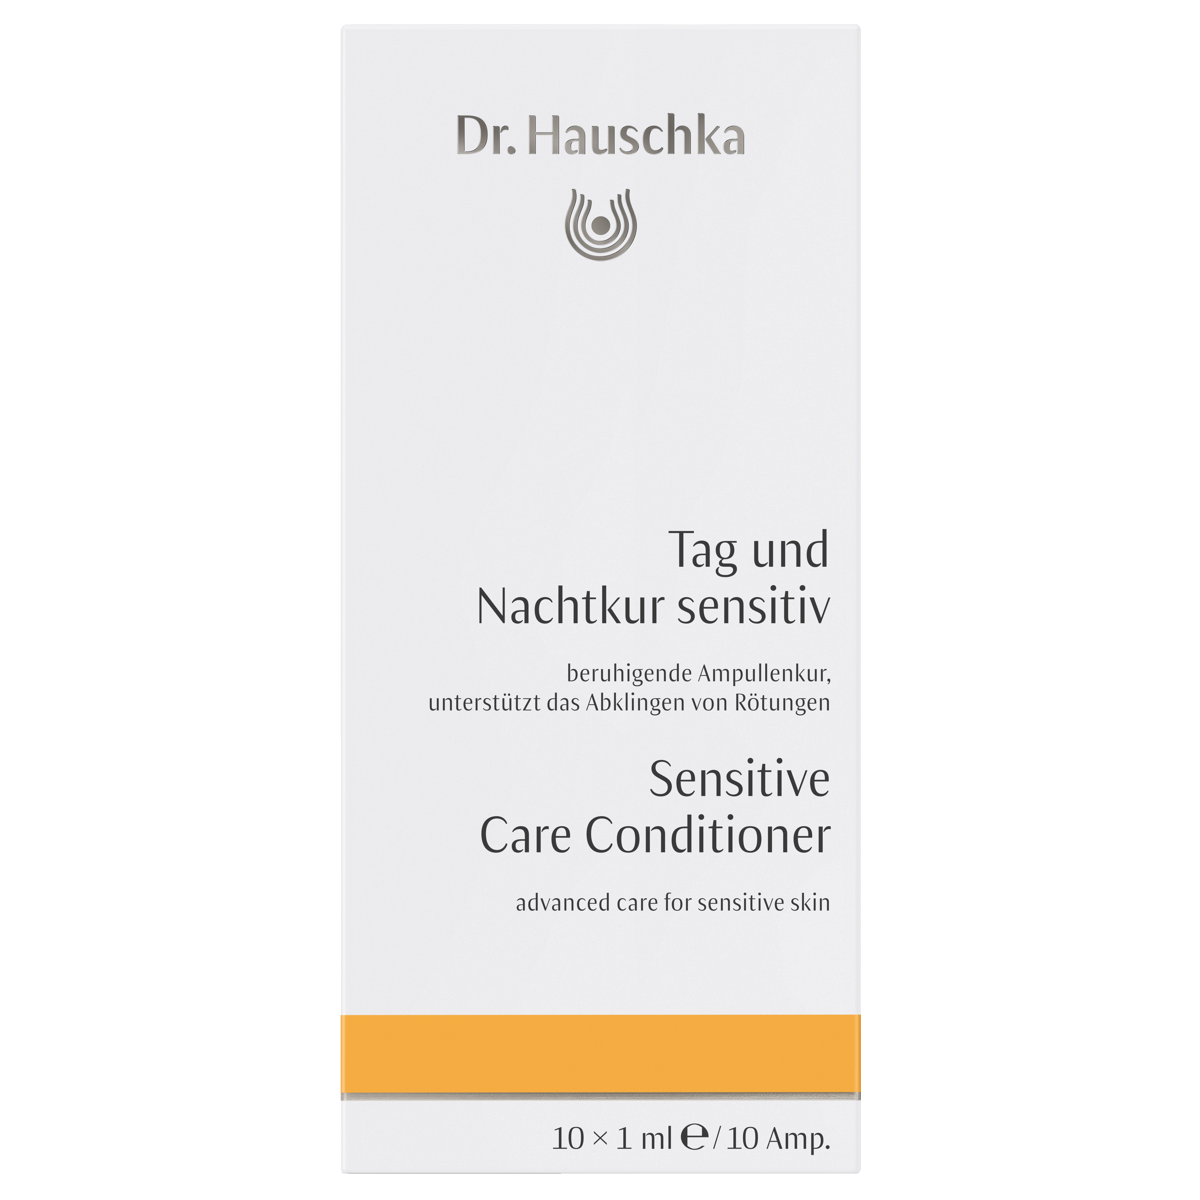 Dr_Hauschka_Tag_und_Nachtkur_sensitiv_online_kaufen